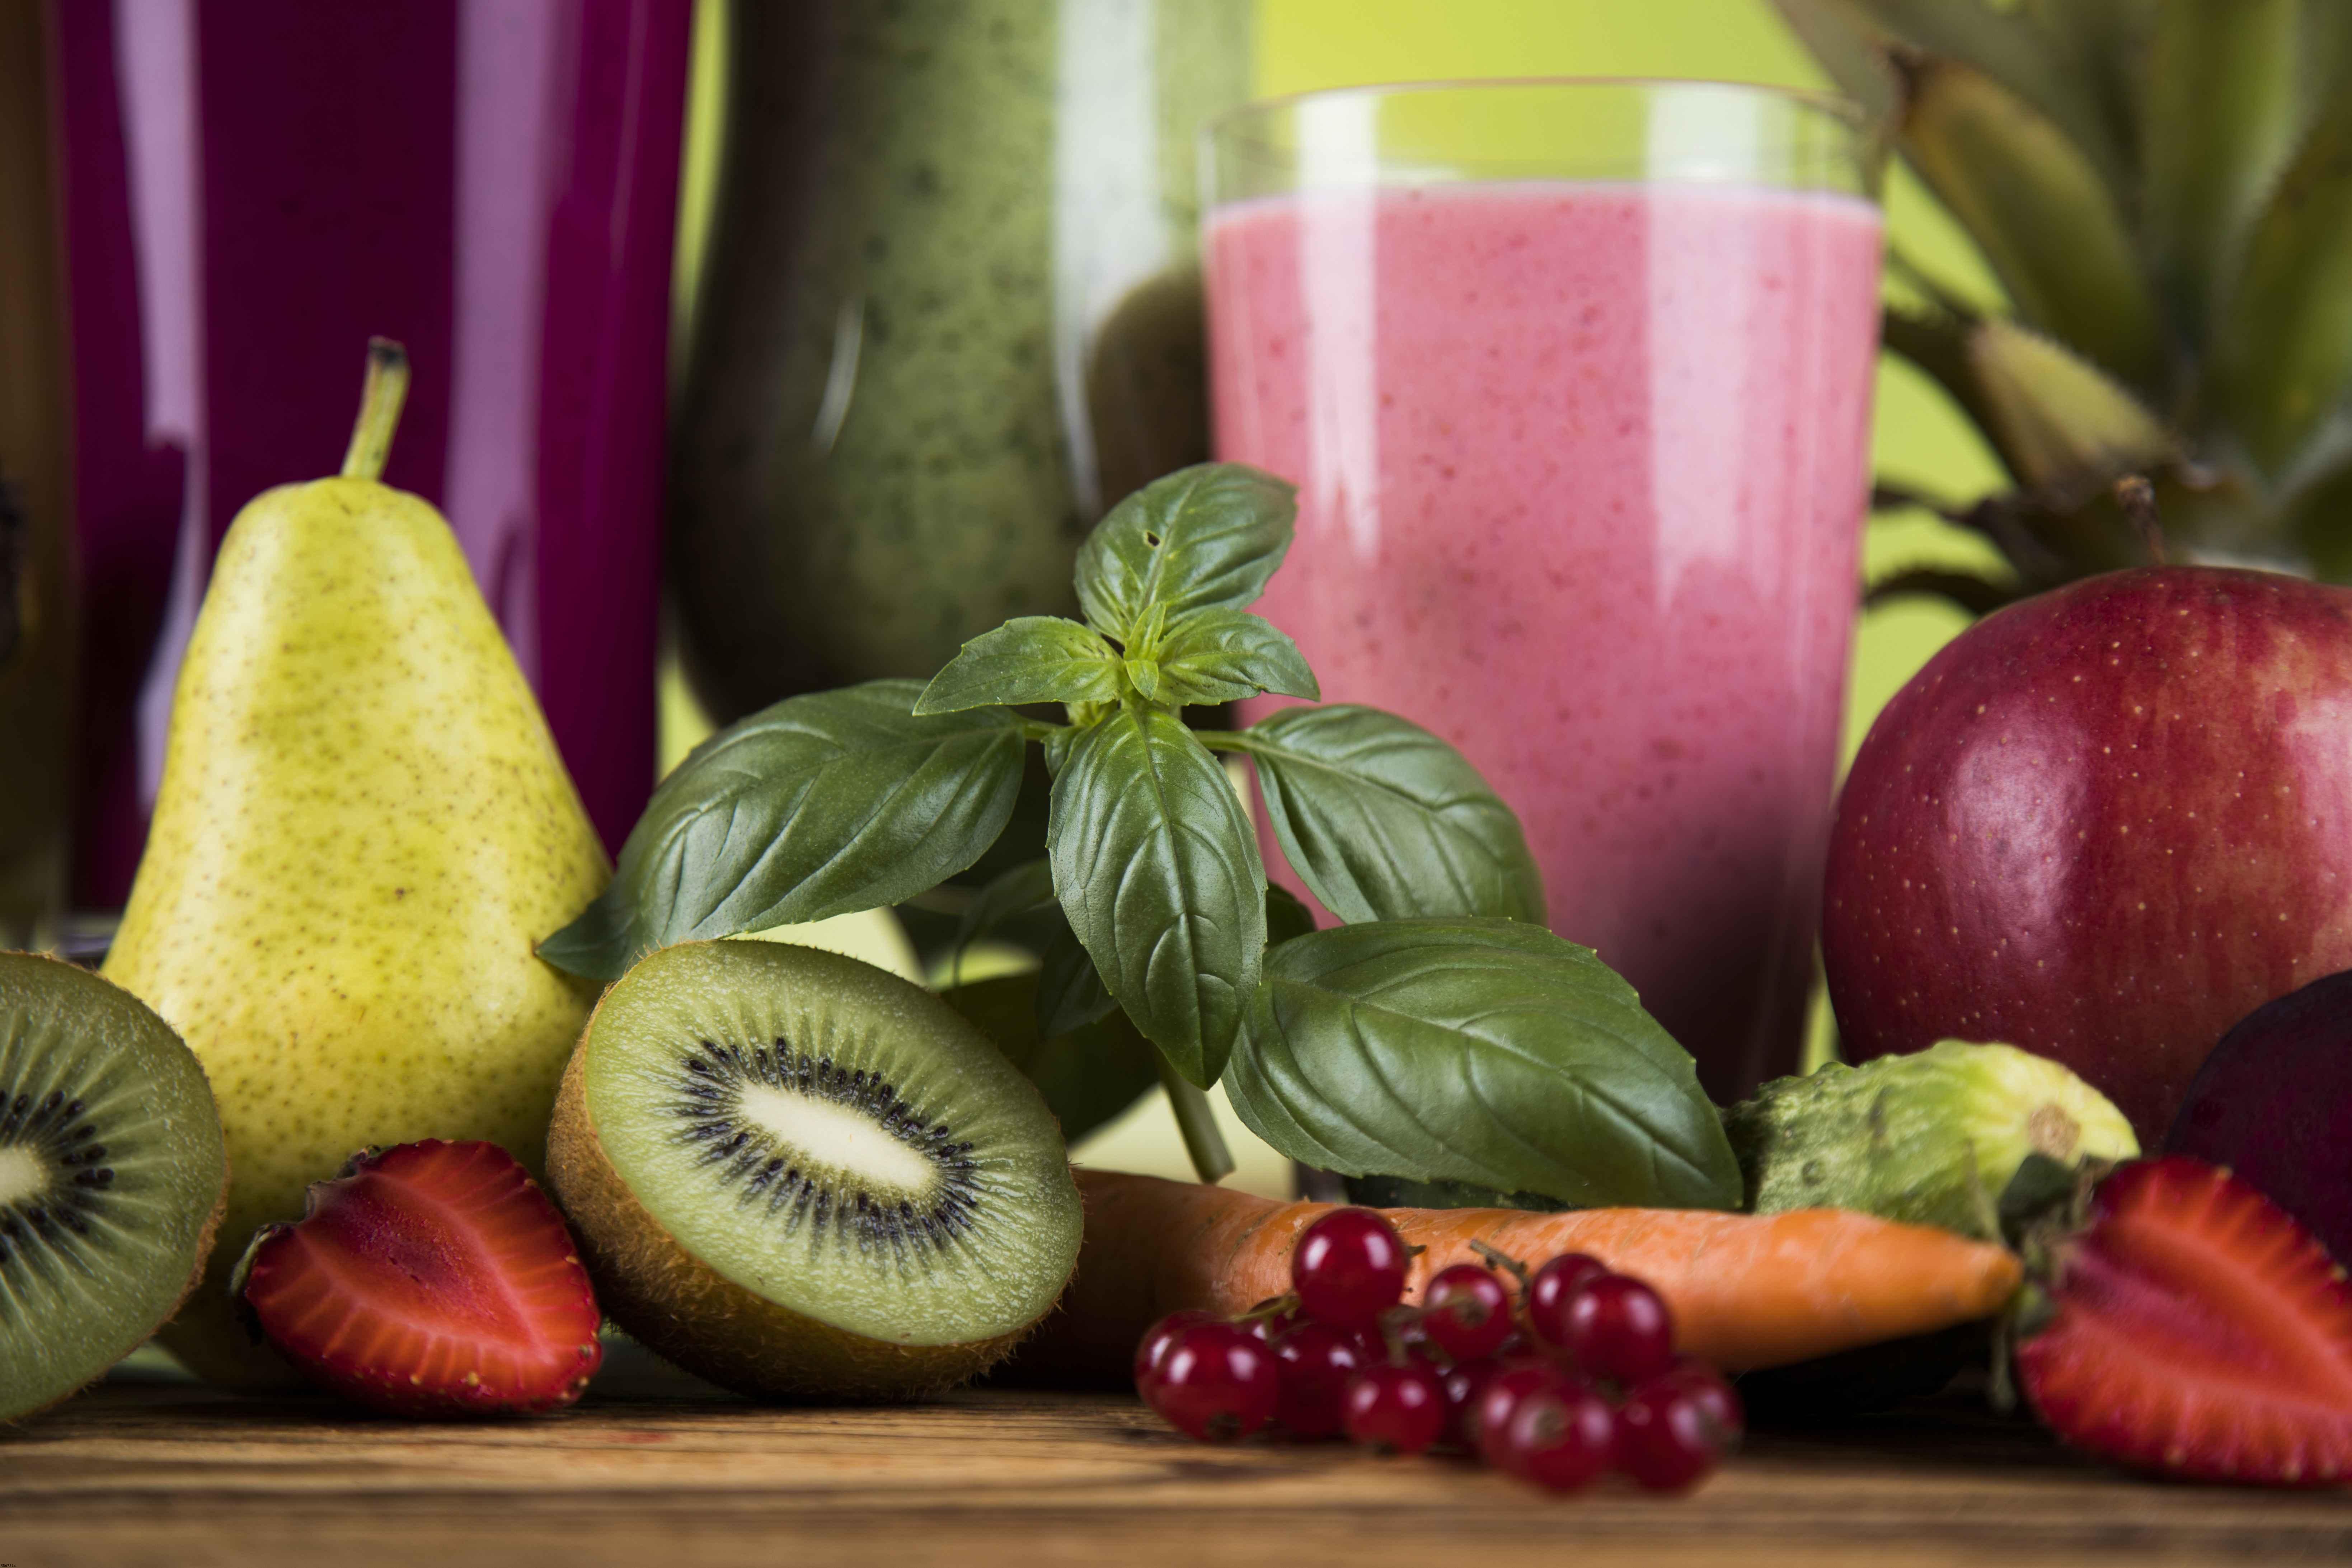 过敏性紫癜能吃的水果过敏性紫癜饮食原则